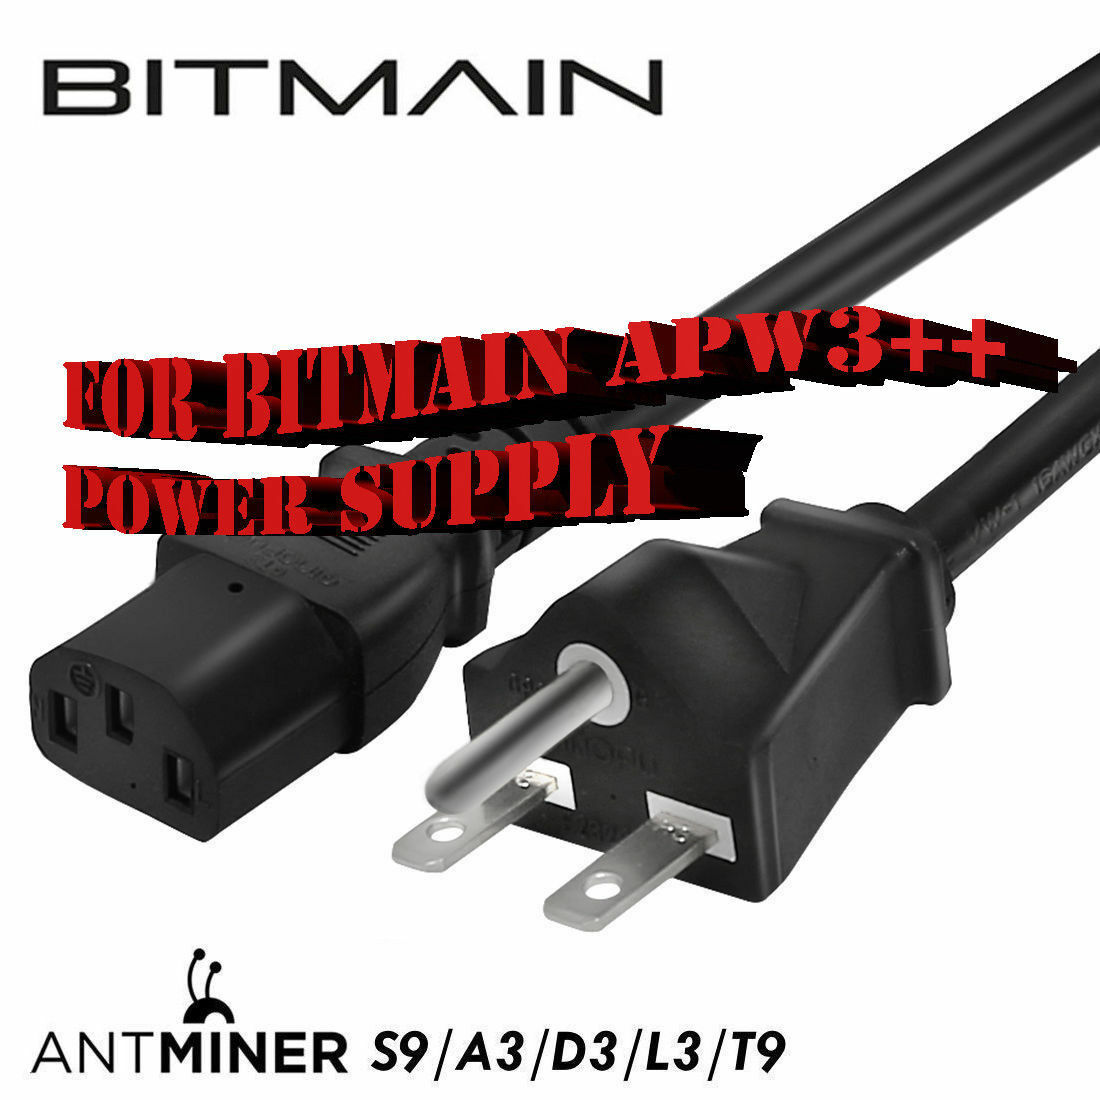 Bitmain Heavy 16awg Psu 220v 240v Power Cord Cable Antminer S9 L3 Nema 6-20p 3ft